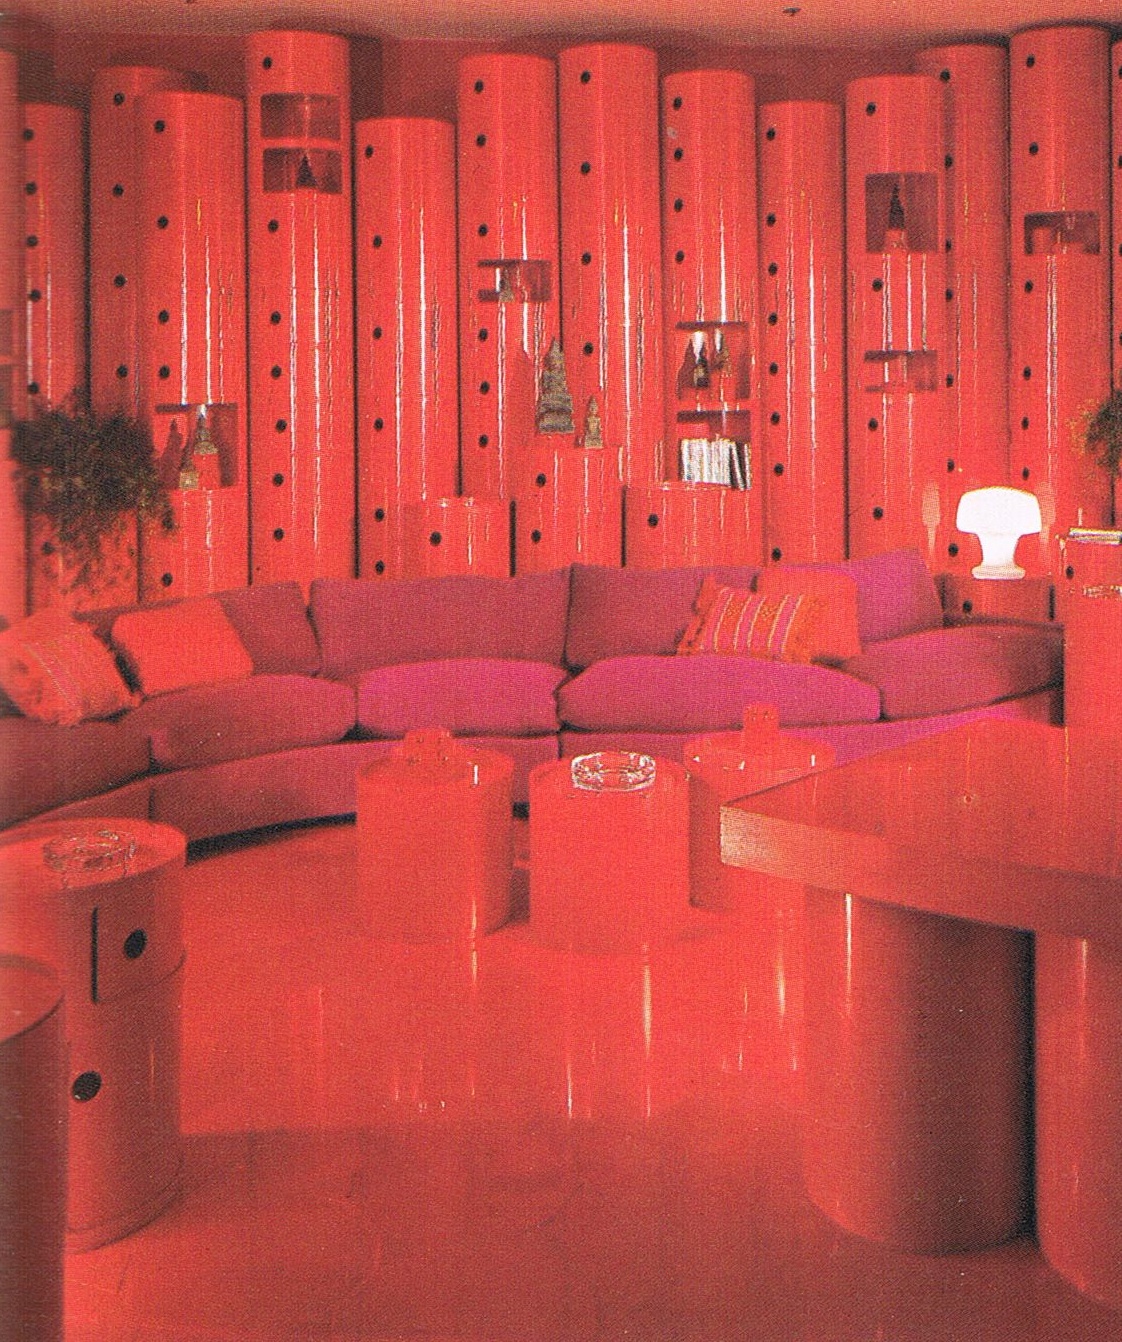 http://3.bp.blogspot.com/-OzXMF61dO9o/TWSf5TzdyAI/AAAAAAAAAT4/bR1IfUGPZOc/s1600/Red+Kartell+Room.jpg